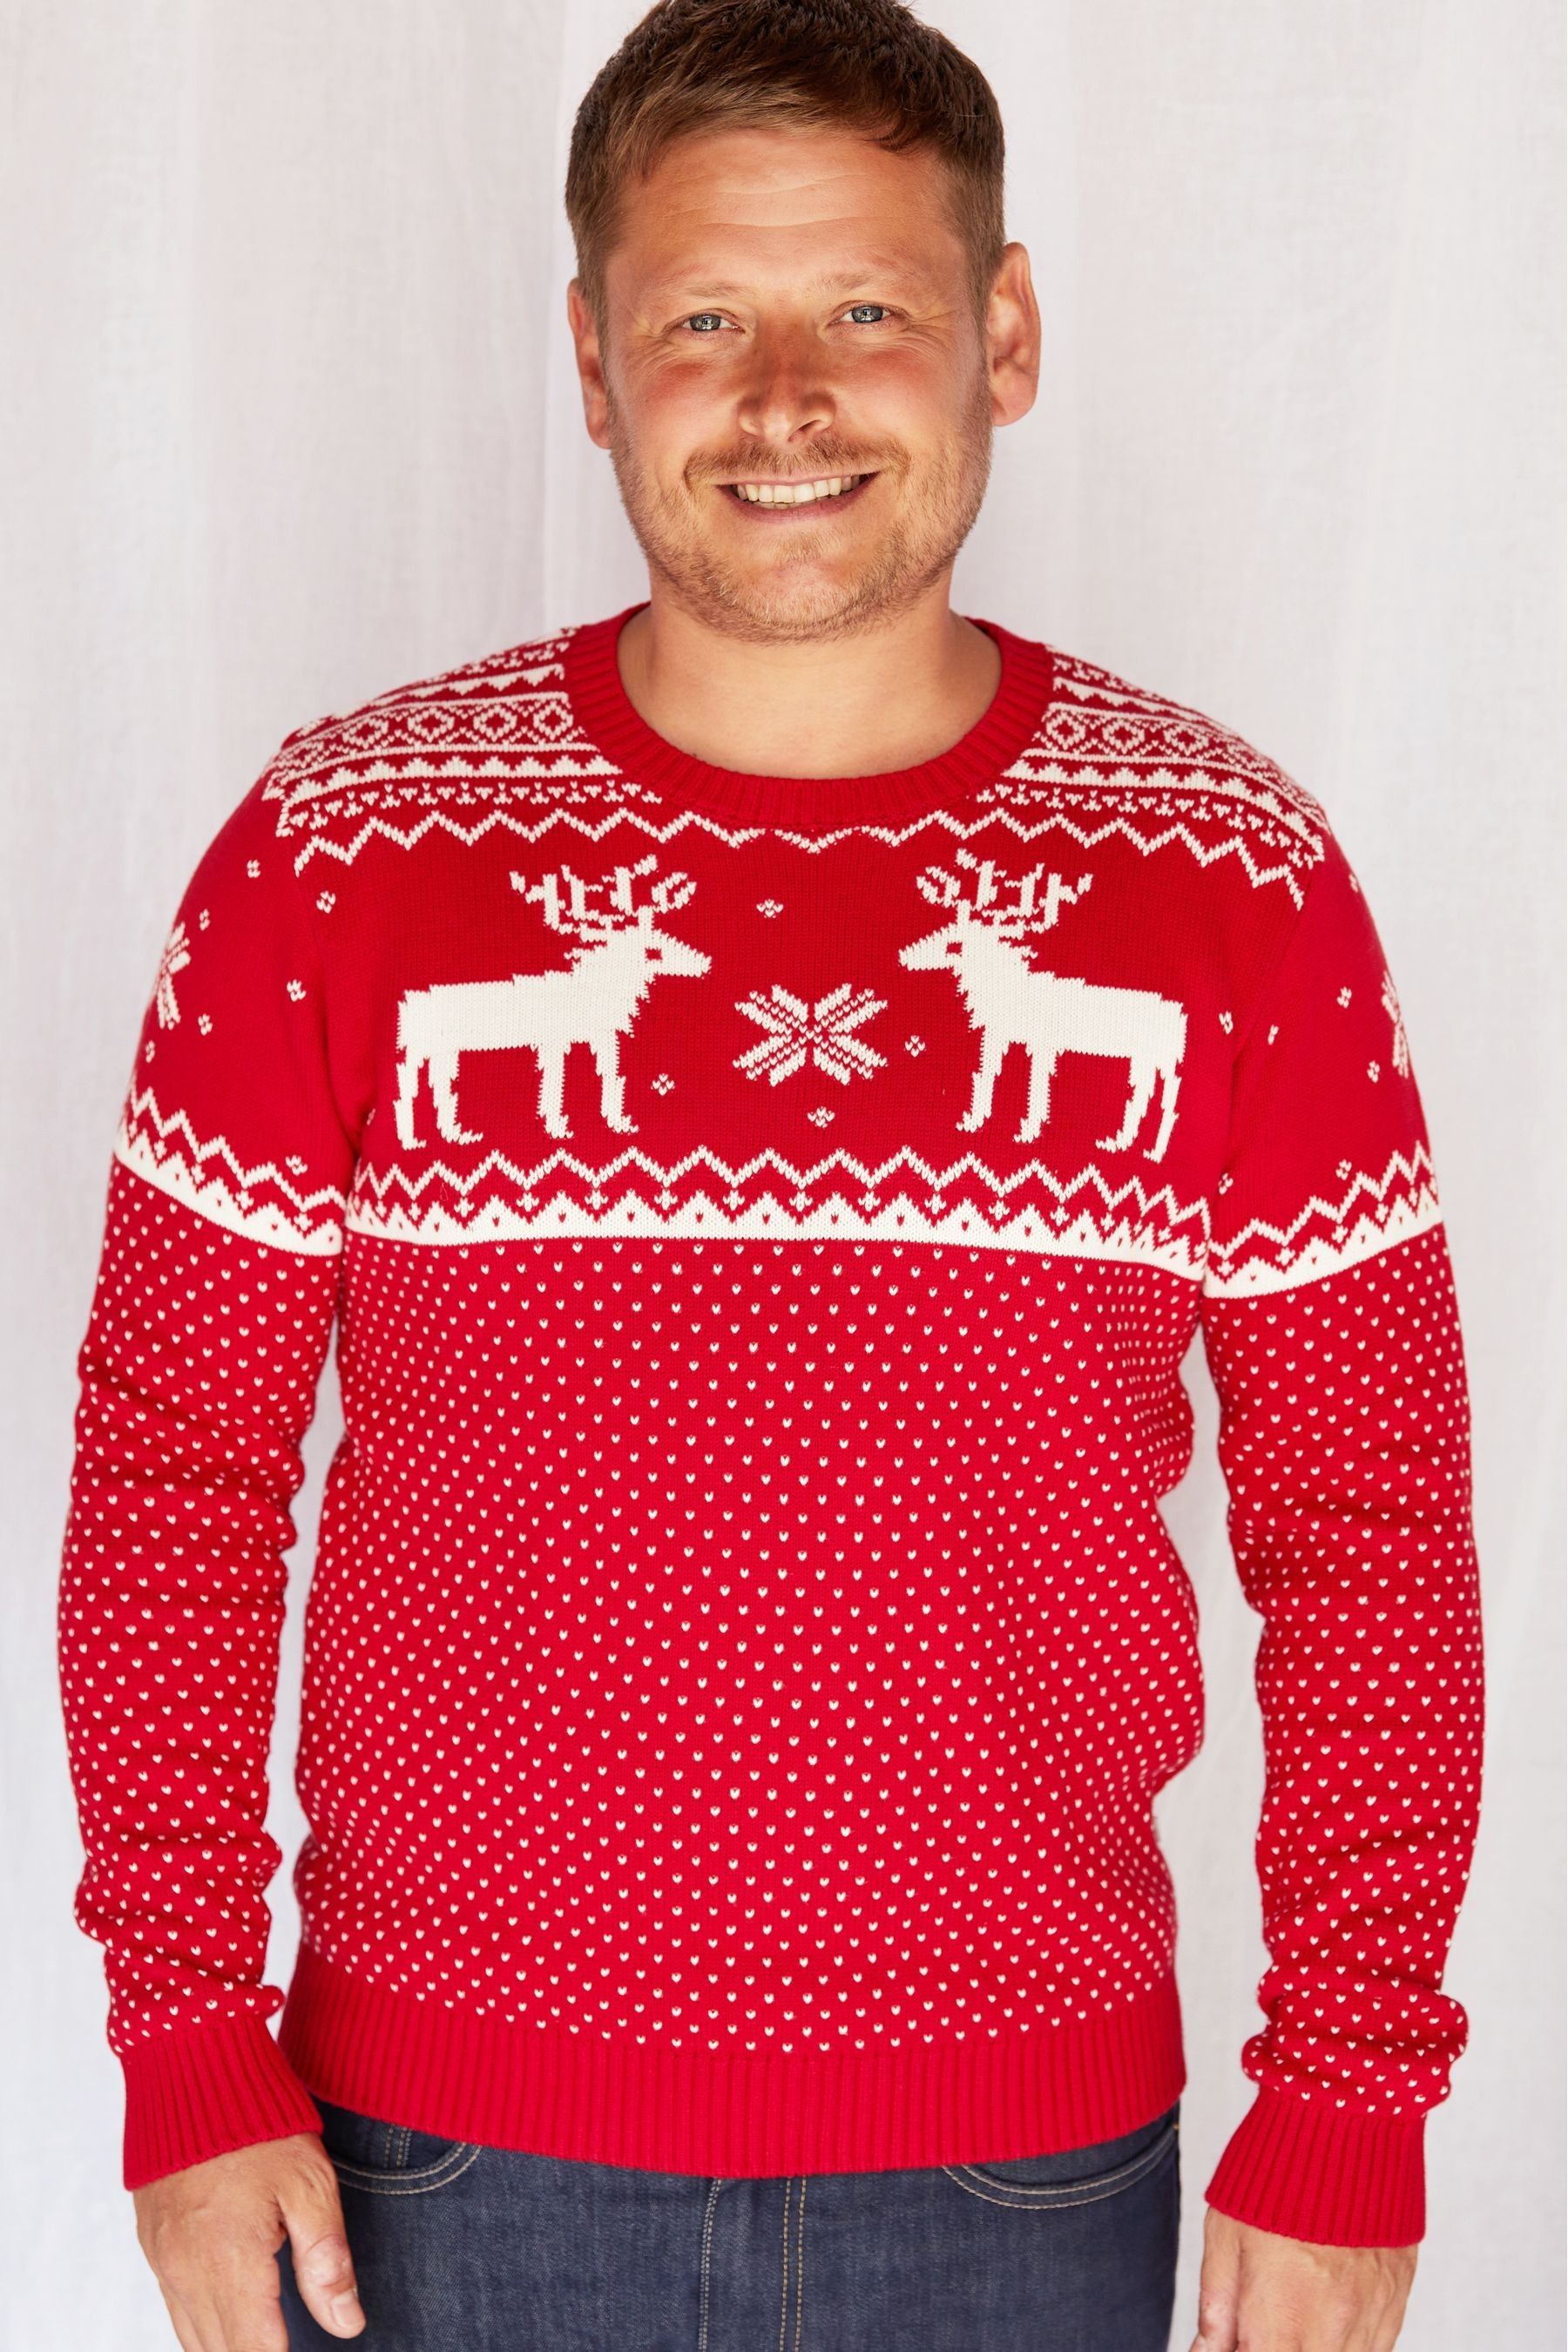 Buy The Little Tailor Men's Christmas Reindeer Fairisle Jumper from the ...